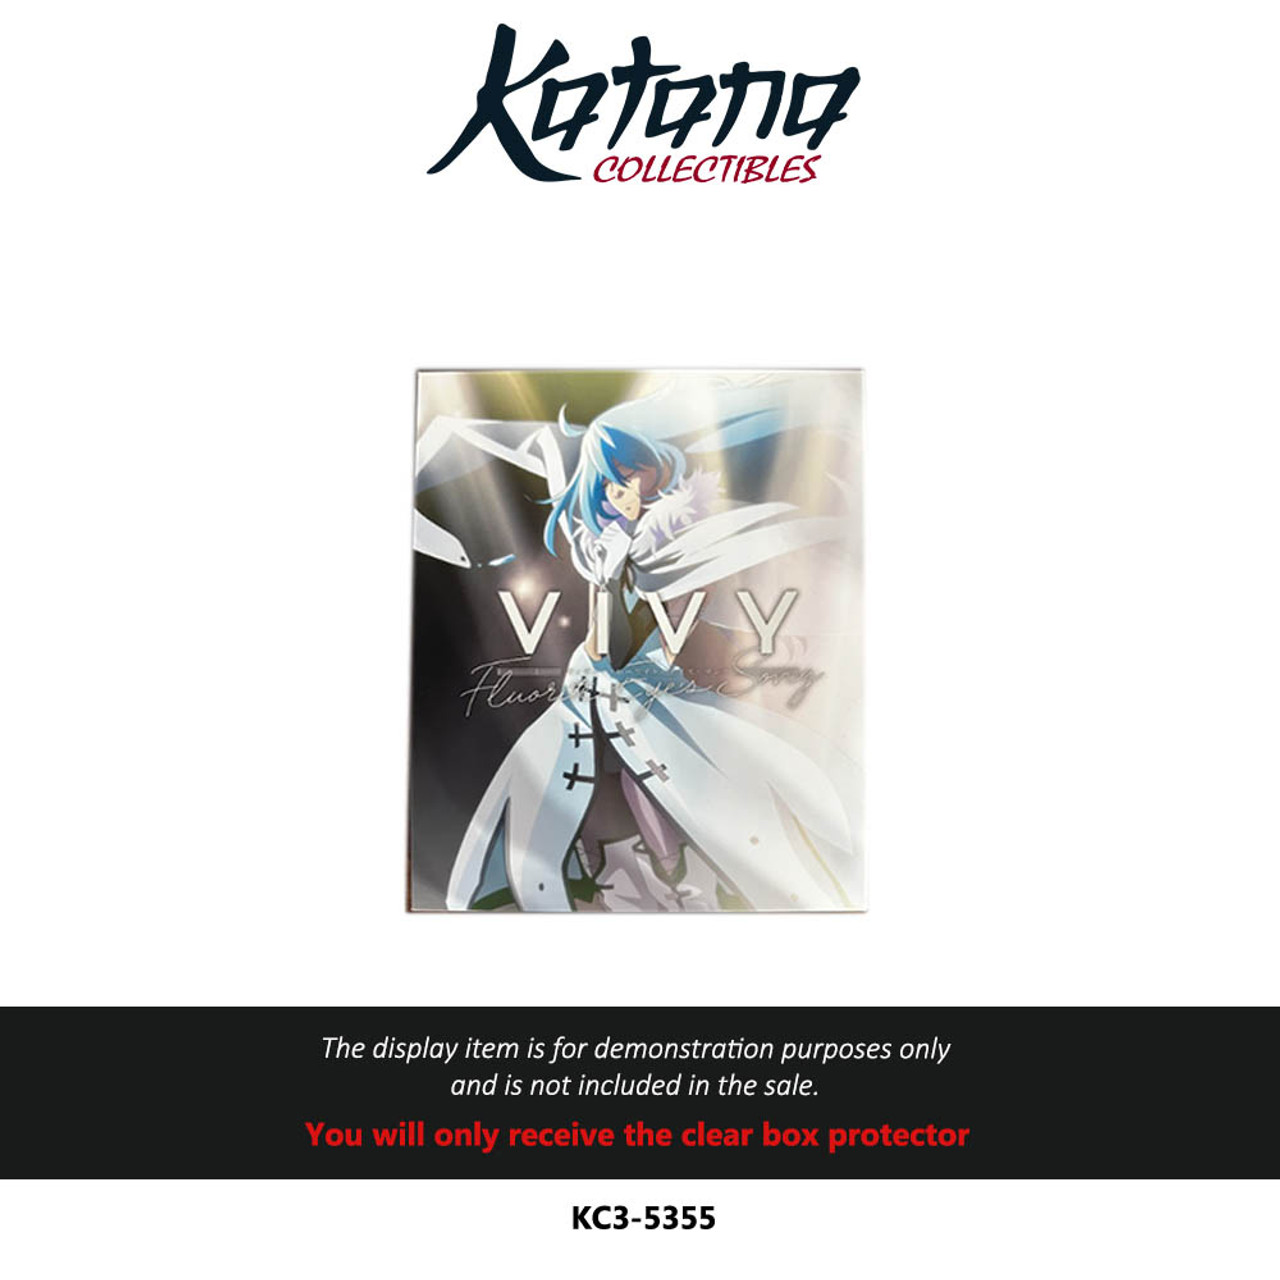 Katana Collectibles Protector For Vivy Fluorite Eye's Song Blu-ray